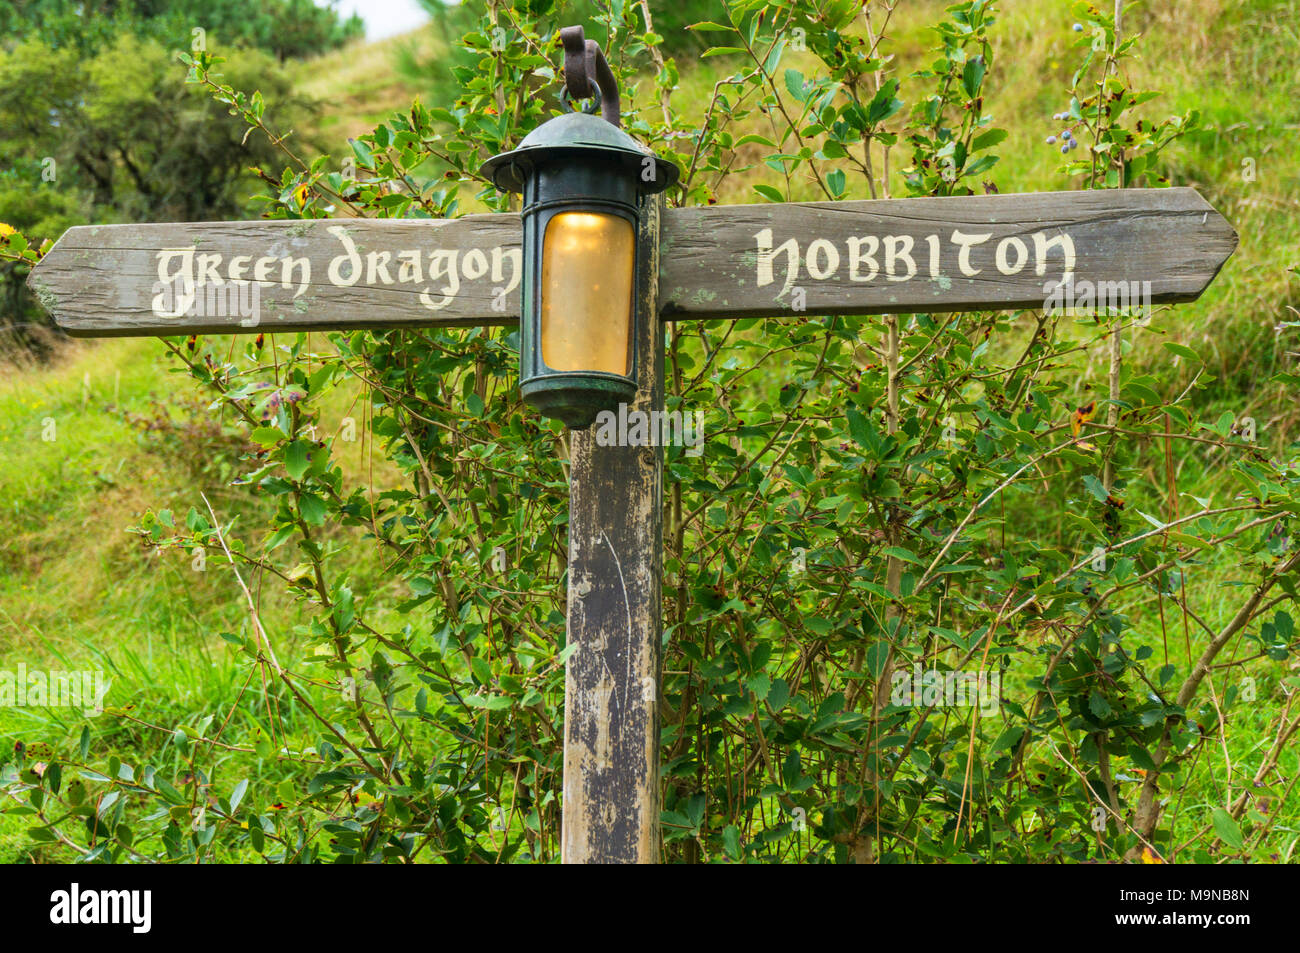 Nueva Zelanda Nueva Zelanda Matamata Hobbiton Hobbiton plató aldea ficticia de Hobbiton en la comarca de El Hobbit y el señor de los anillos bookssign Foto de stock